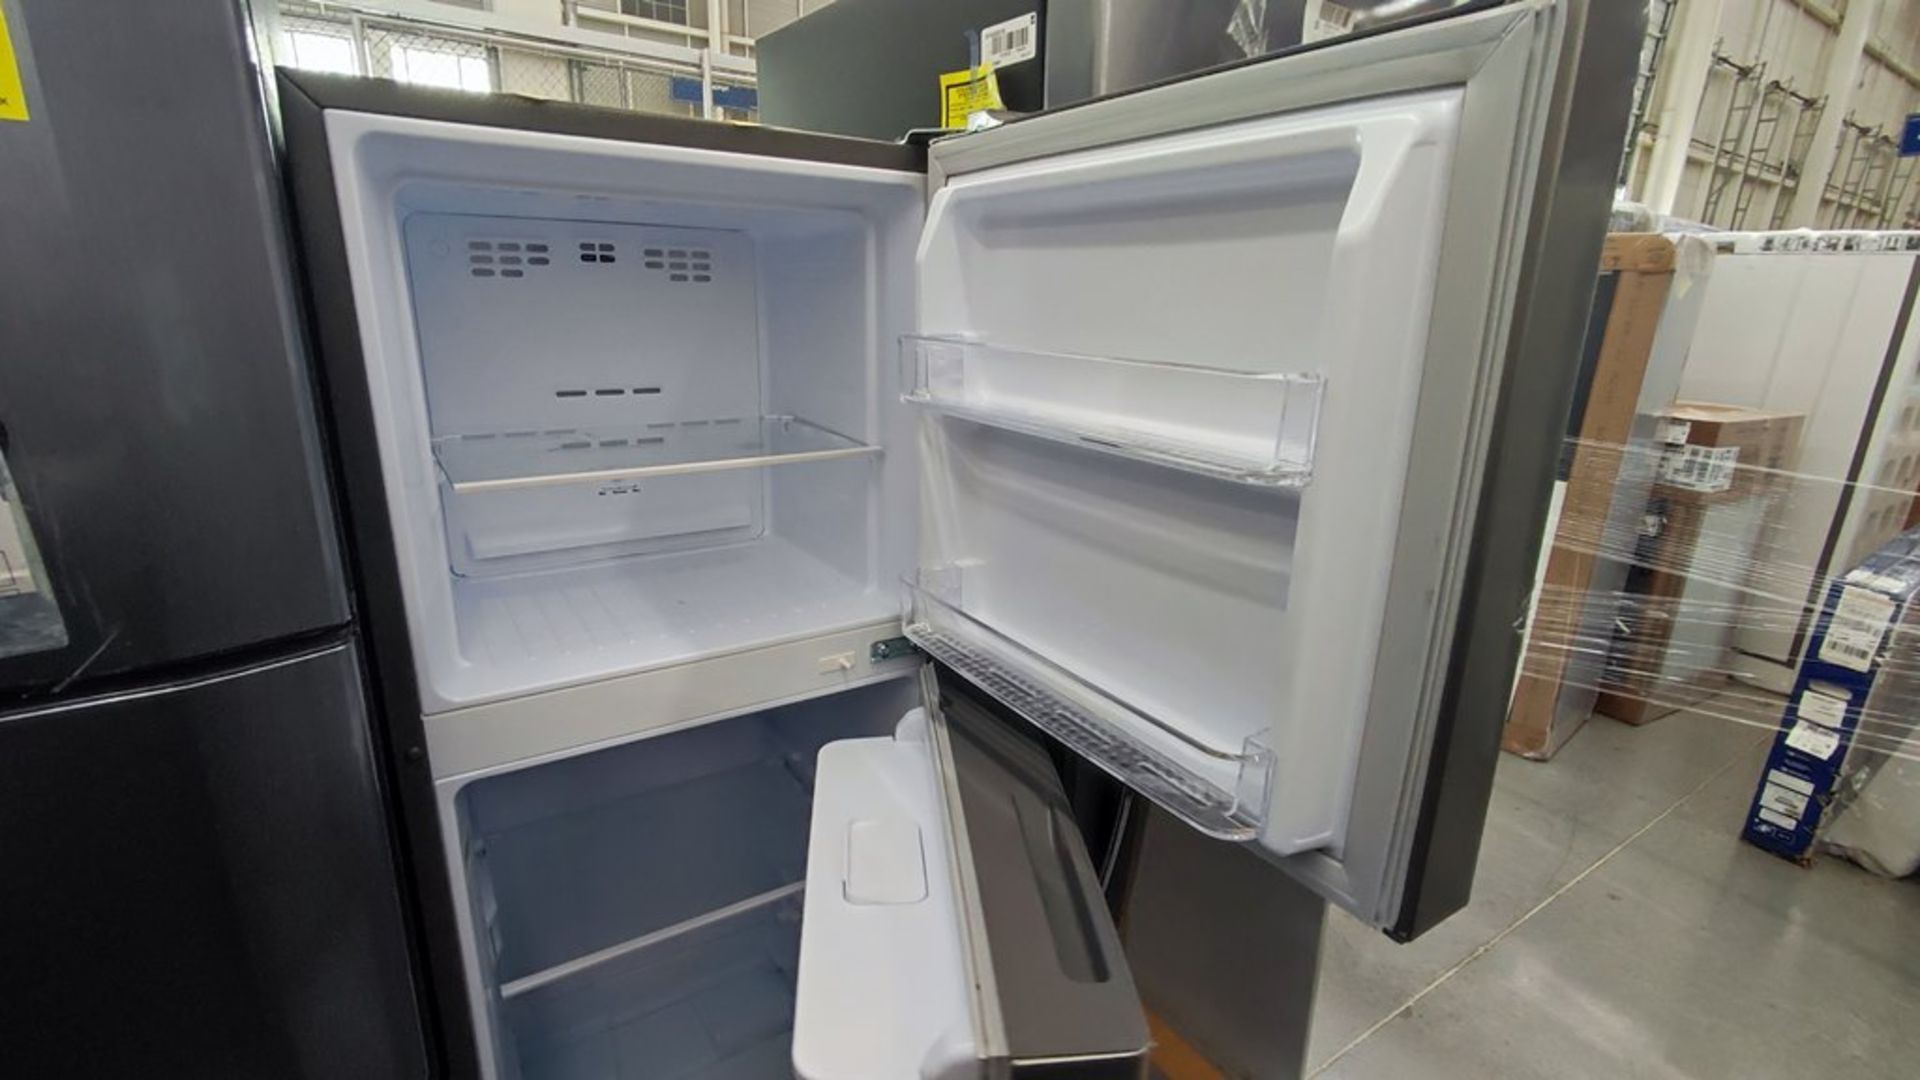 Lote de 2 refrigeradores contiene: 1 Refrigerador Marca Mabe, Modelo RMT400RY, No de serie 2202B401 - Image 11 of 15